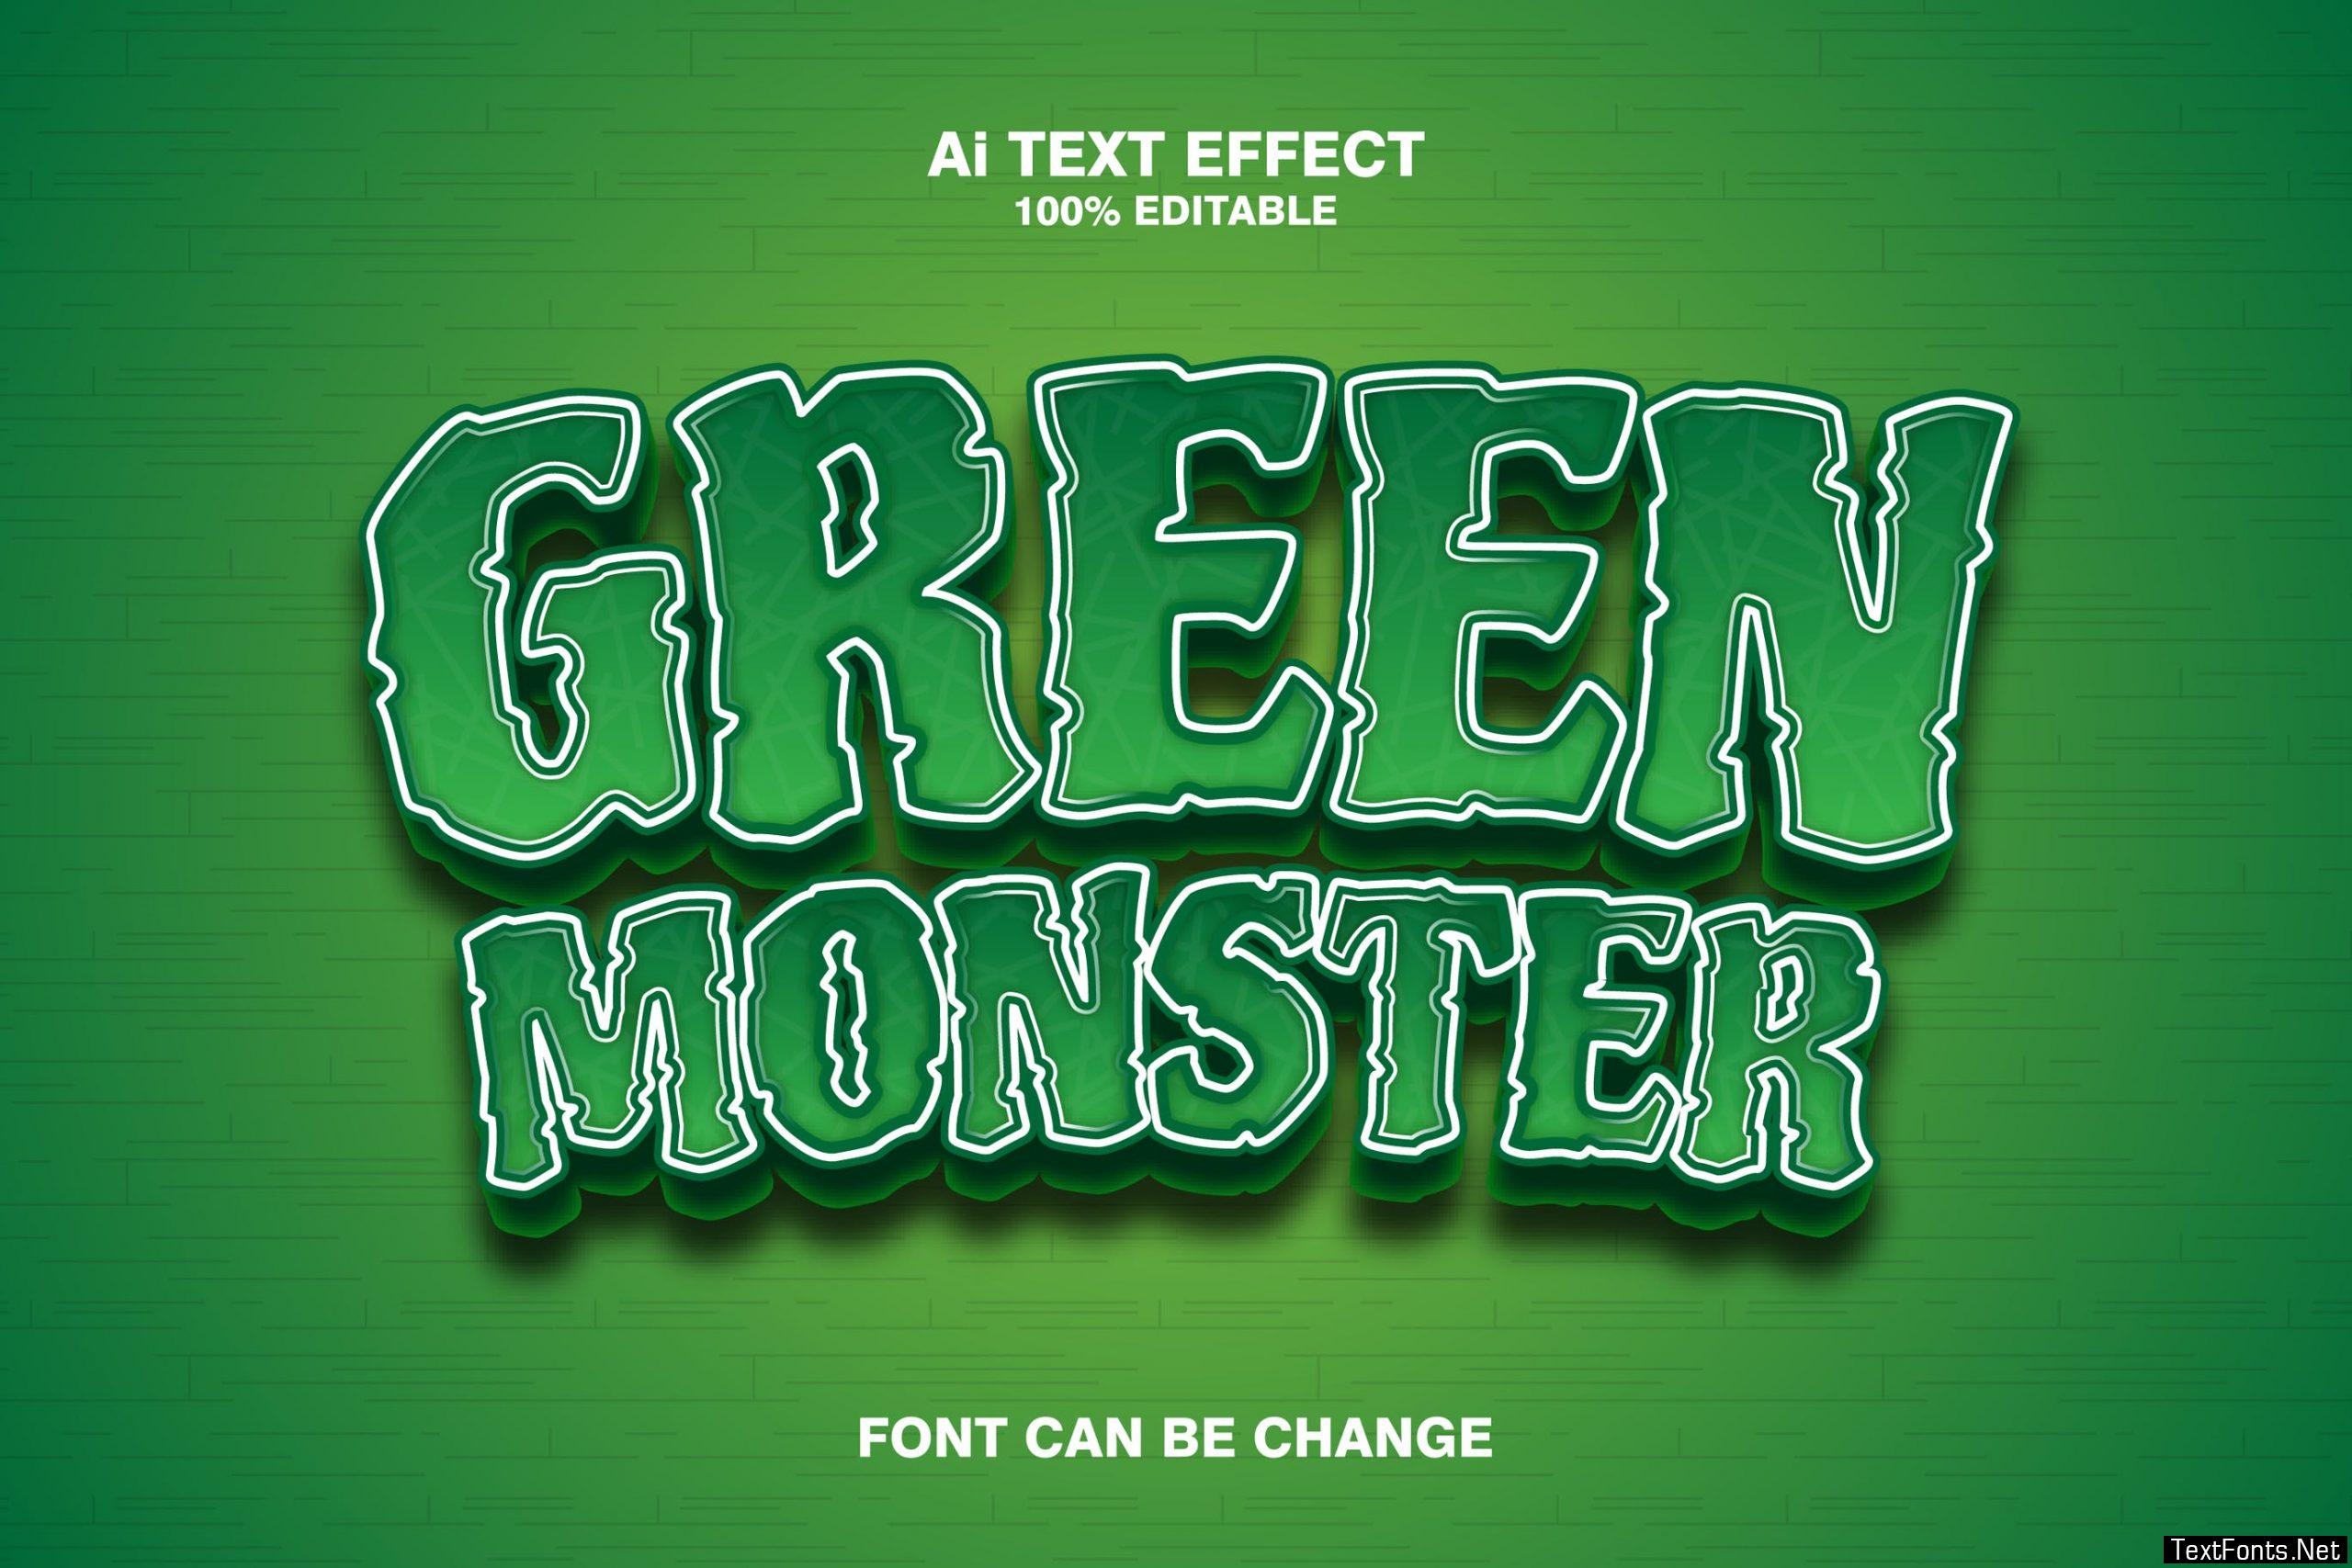 Green Monster 3d Text Effect